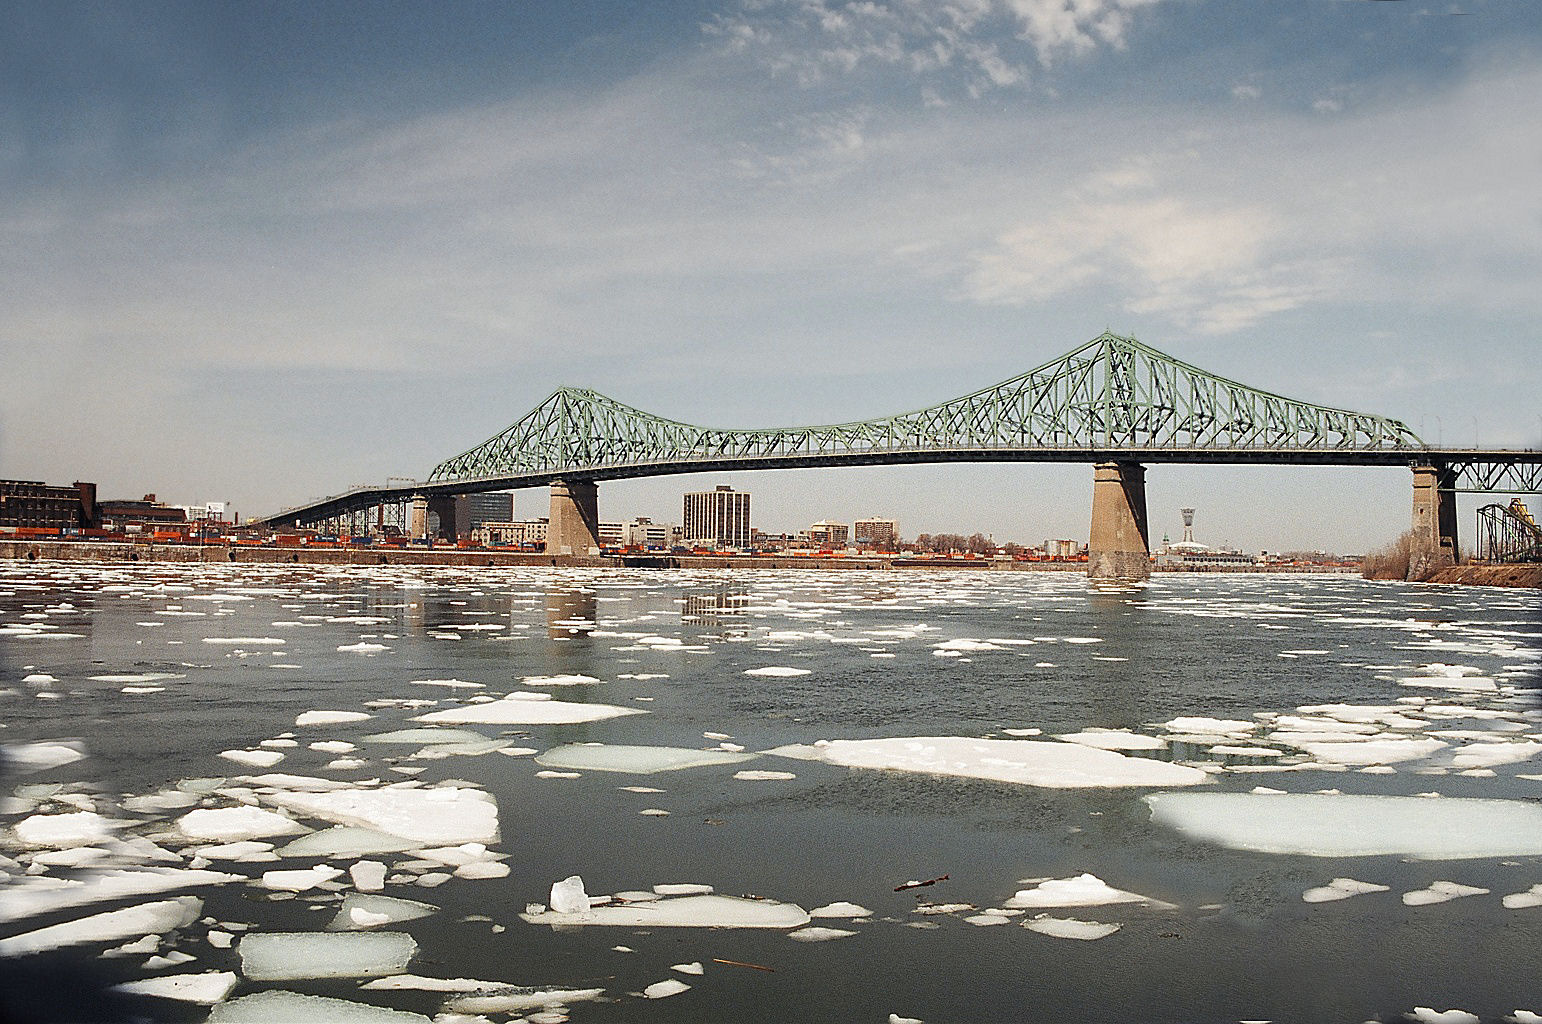 The Jacques Cartier Bridge